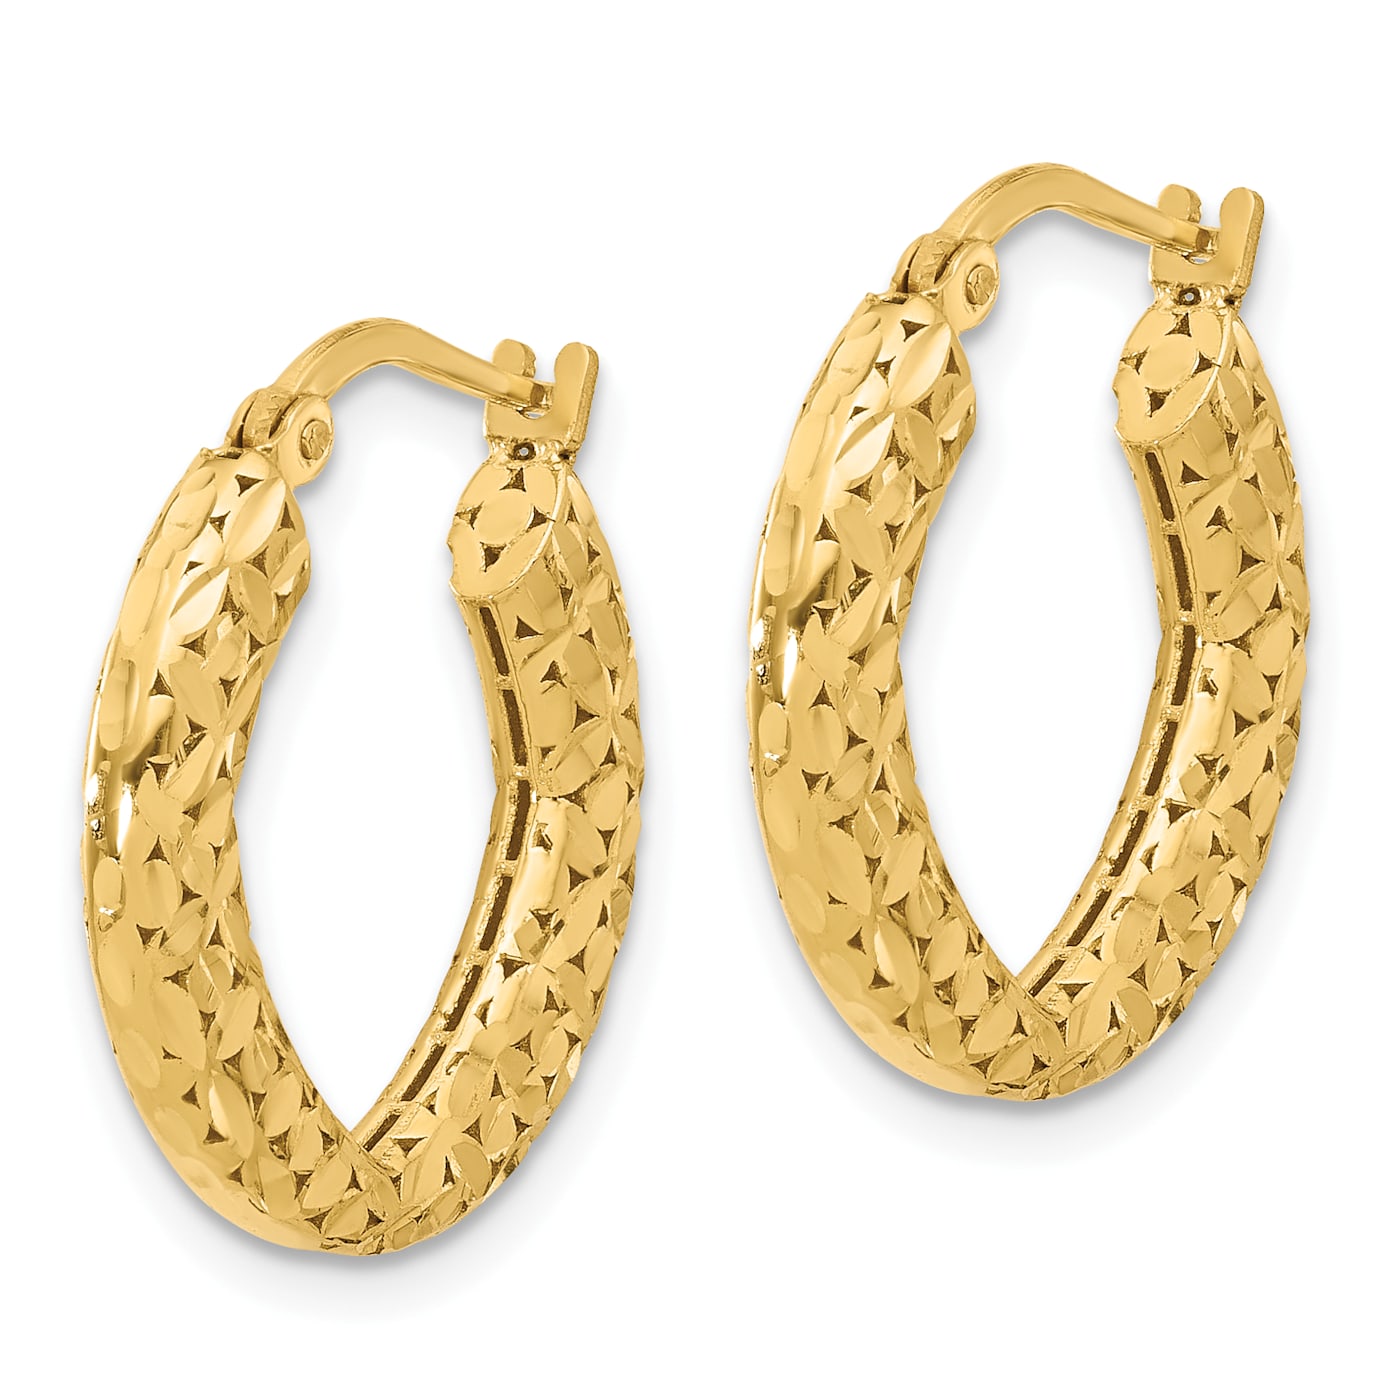 Womens Hoop Earrings With Diamond Cut/14k Gold Filled Hoop Earrings  1.4x1.3/ Aretes Arracadas Para Mujer En Oro Laminado/ Everyday Earrings -   Canada